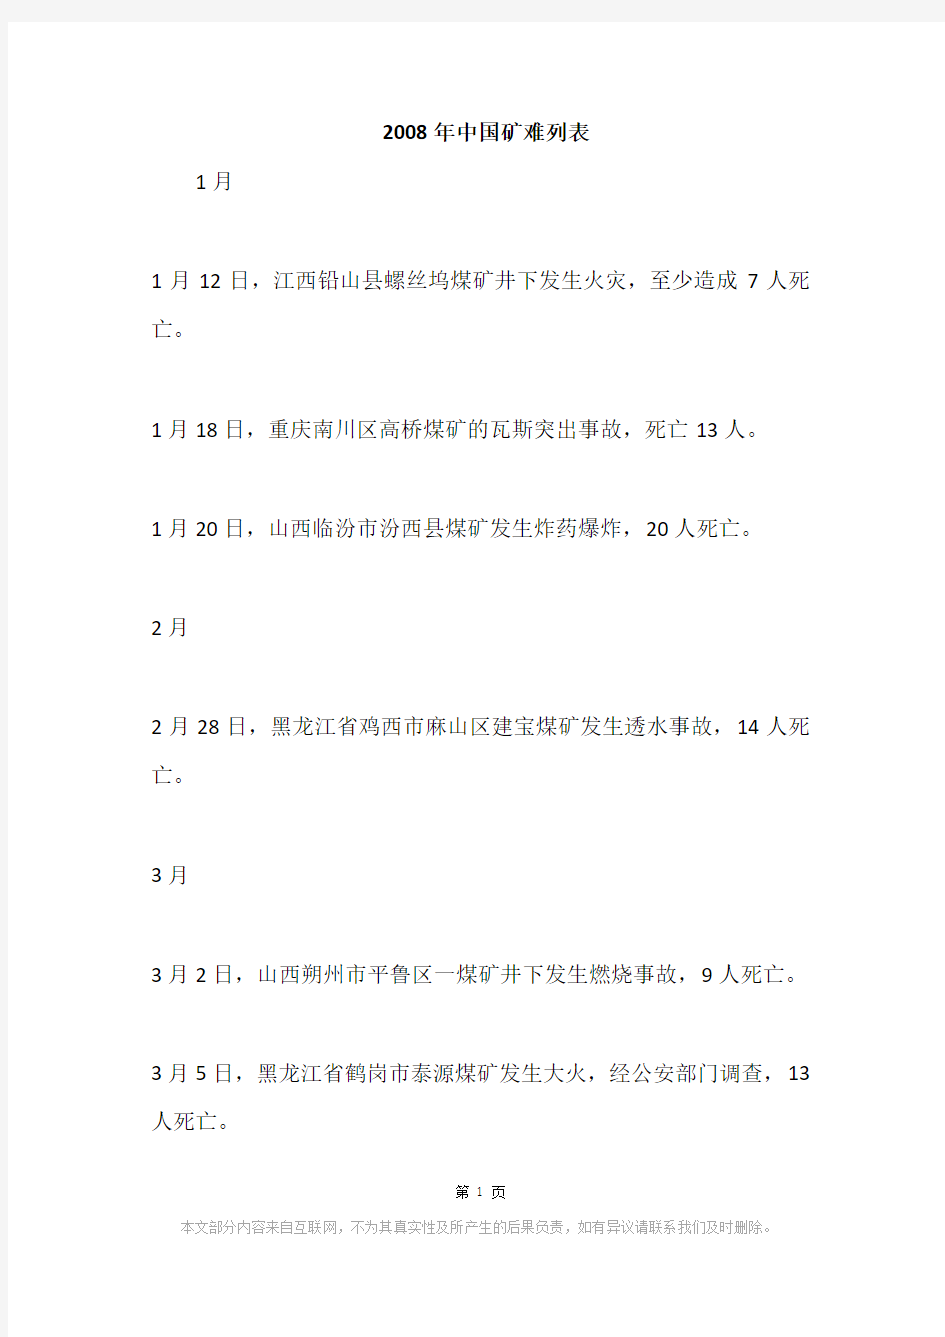 2008年中国矿难列表